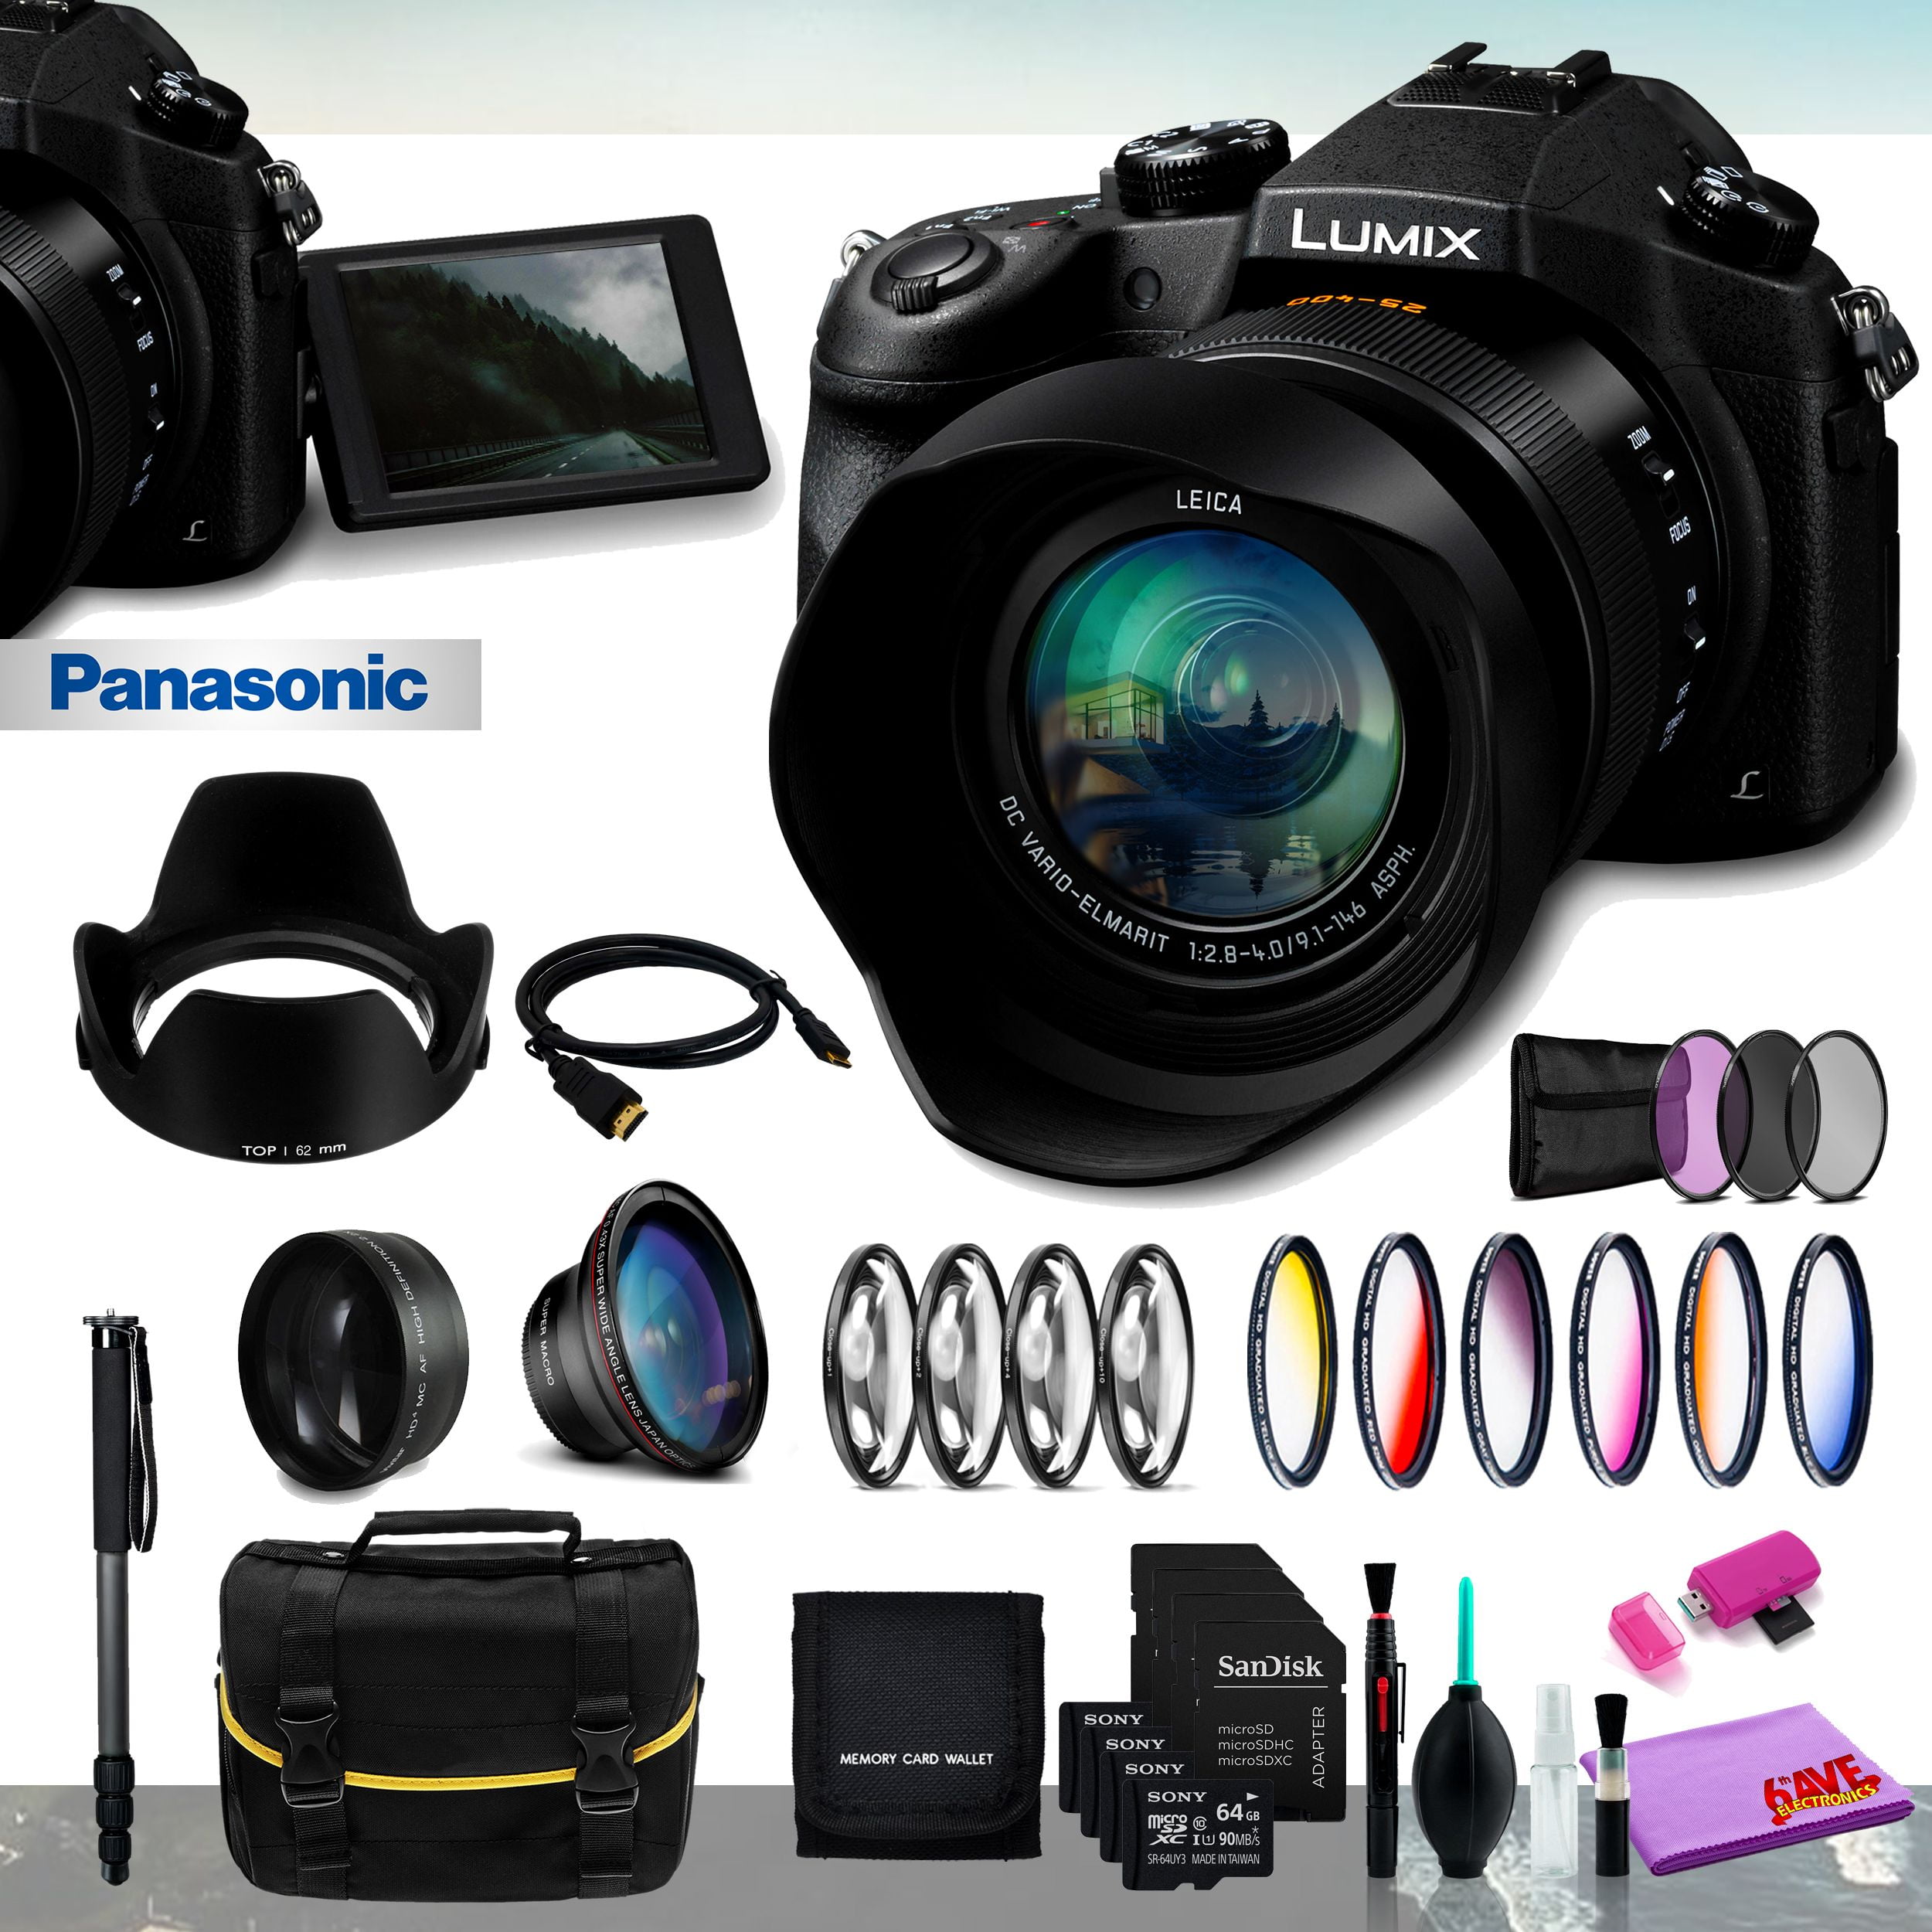 Panasonic Lumix fz1000 II. Нестандартный фотоаппарат 1000 мегапикселей. NTW 1000 Accessories.